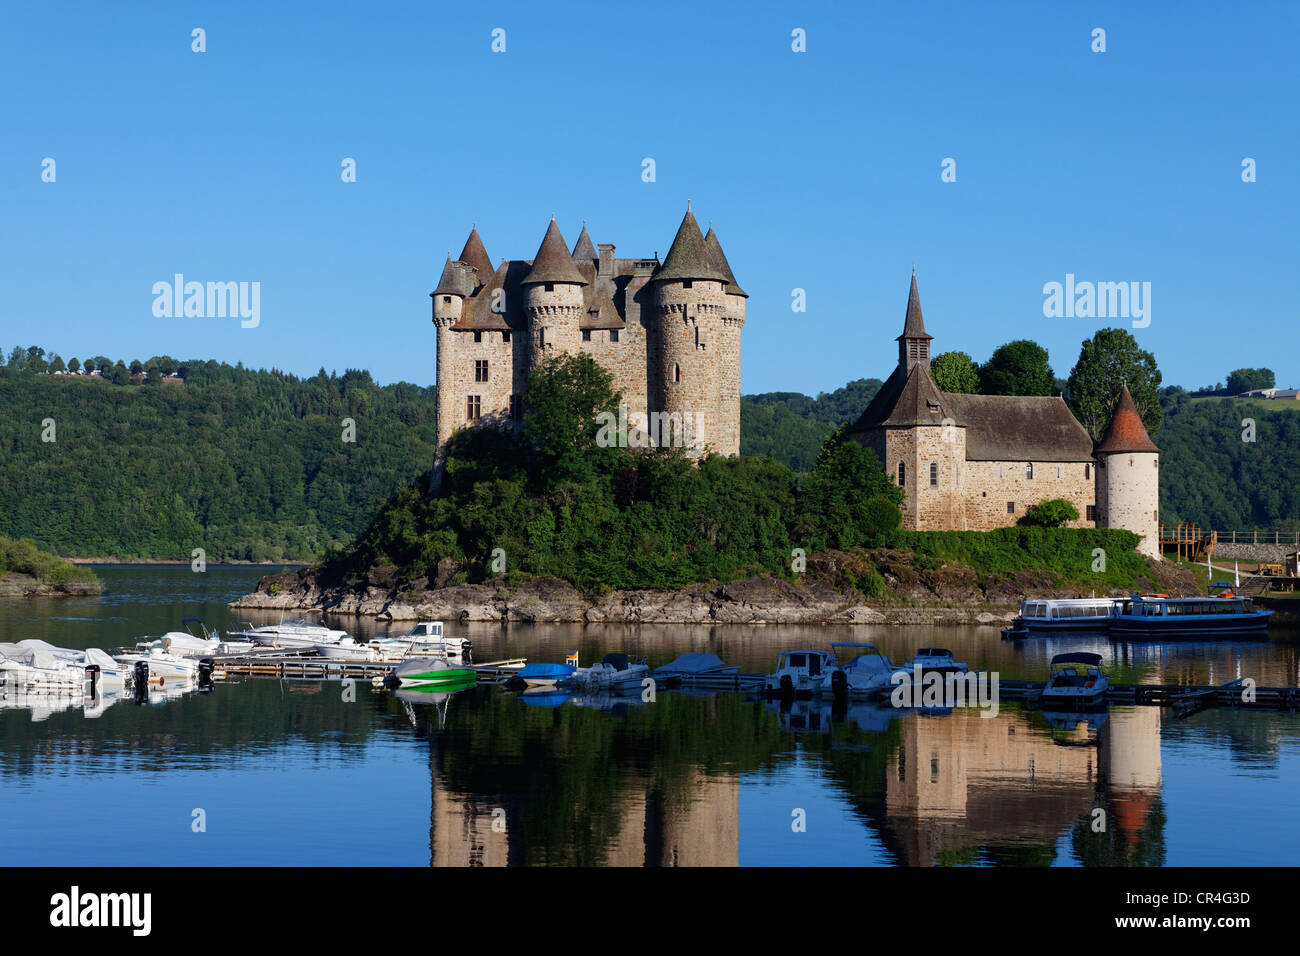 Château de Val, mise en eau barrage hydroélectrique de Bort les orgues, vallée de la Dordogne, Corrèze, Limousin, France, Europe Banque D'Images